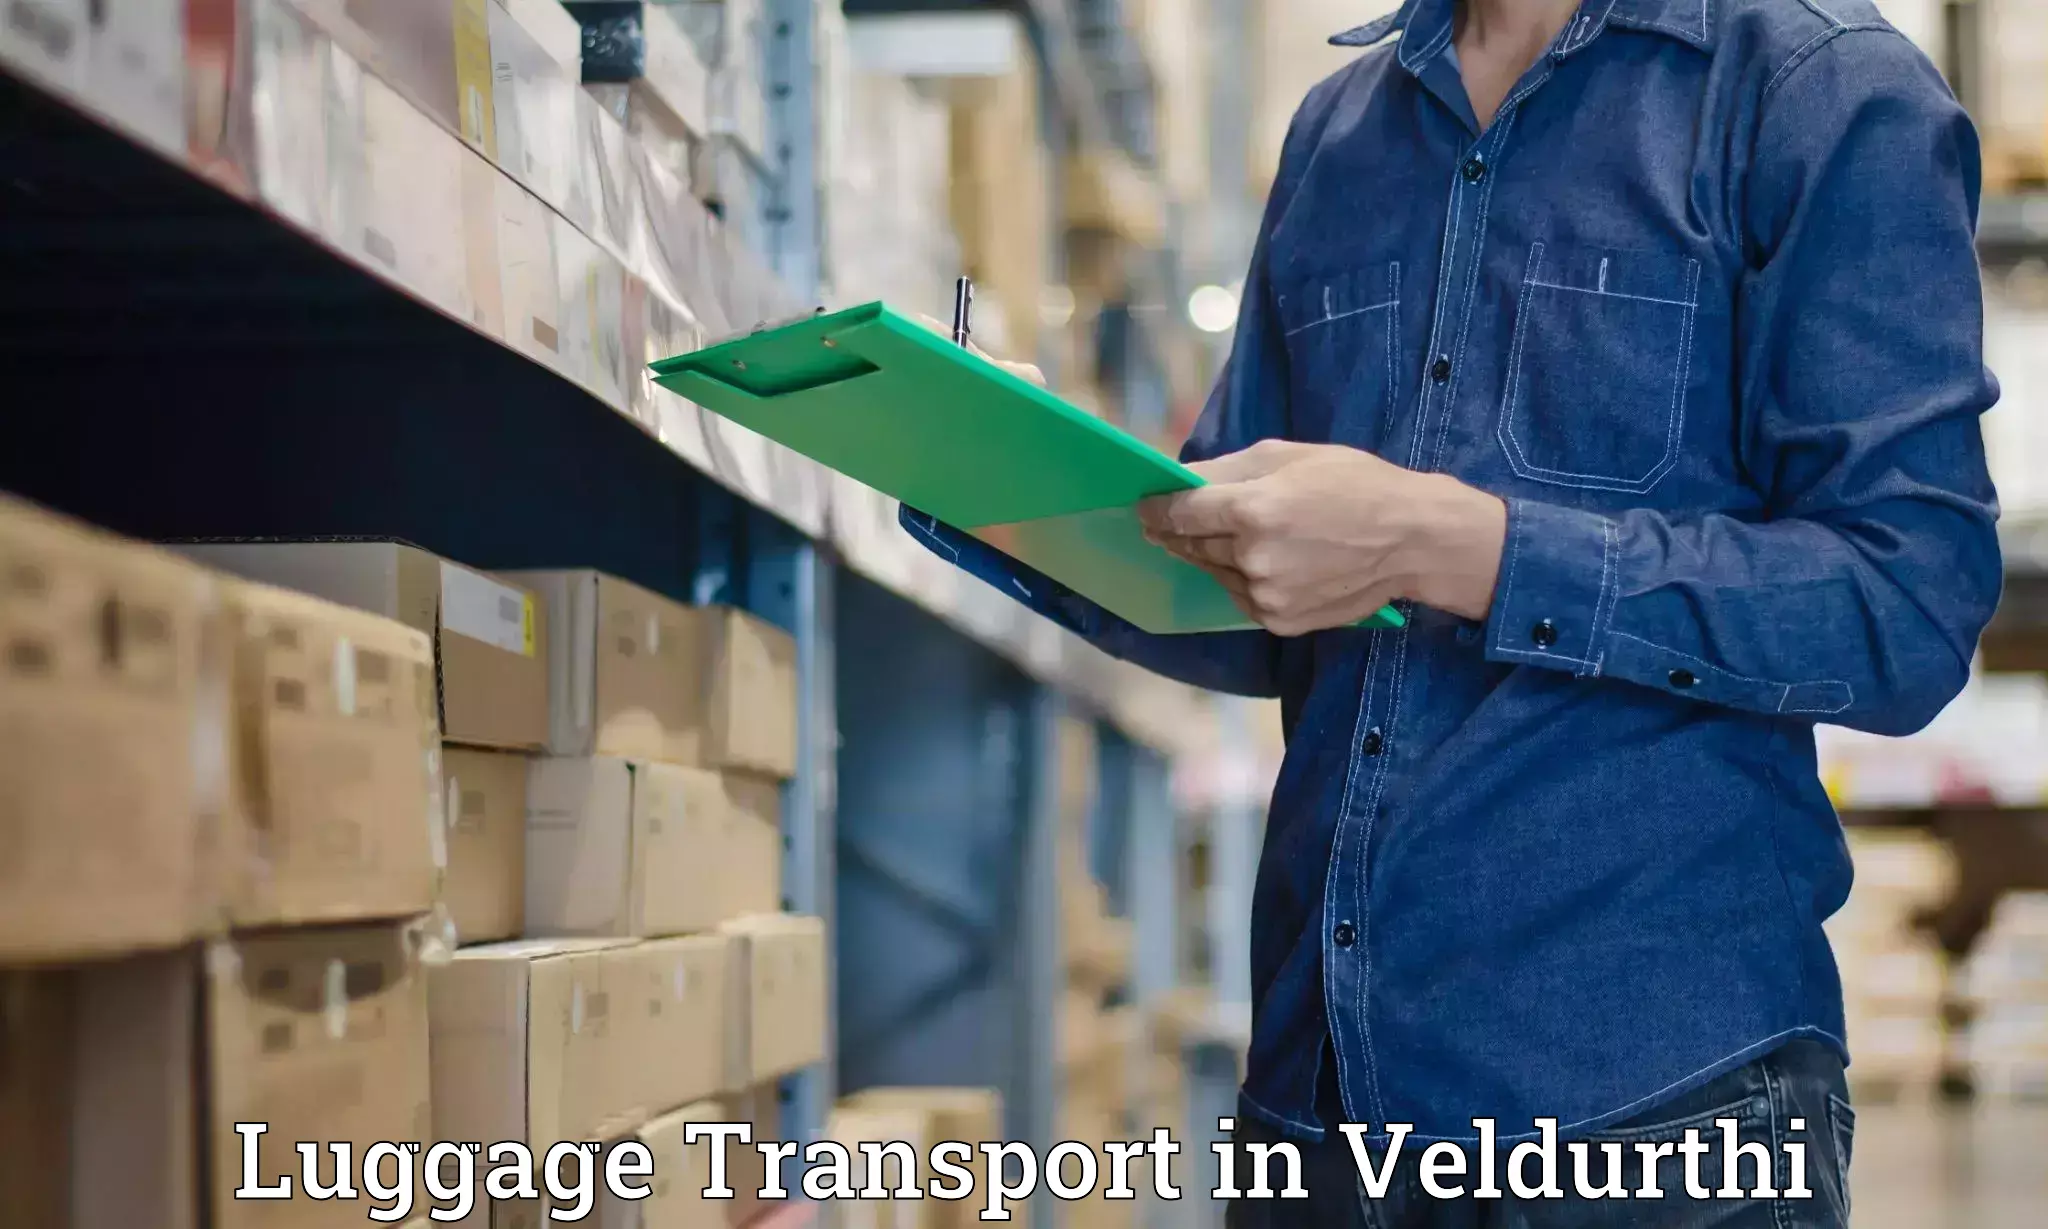 Luggage transport rates in Veldurthi